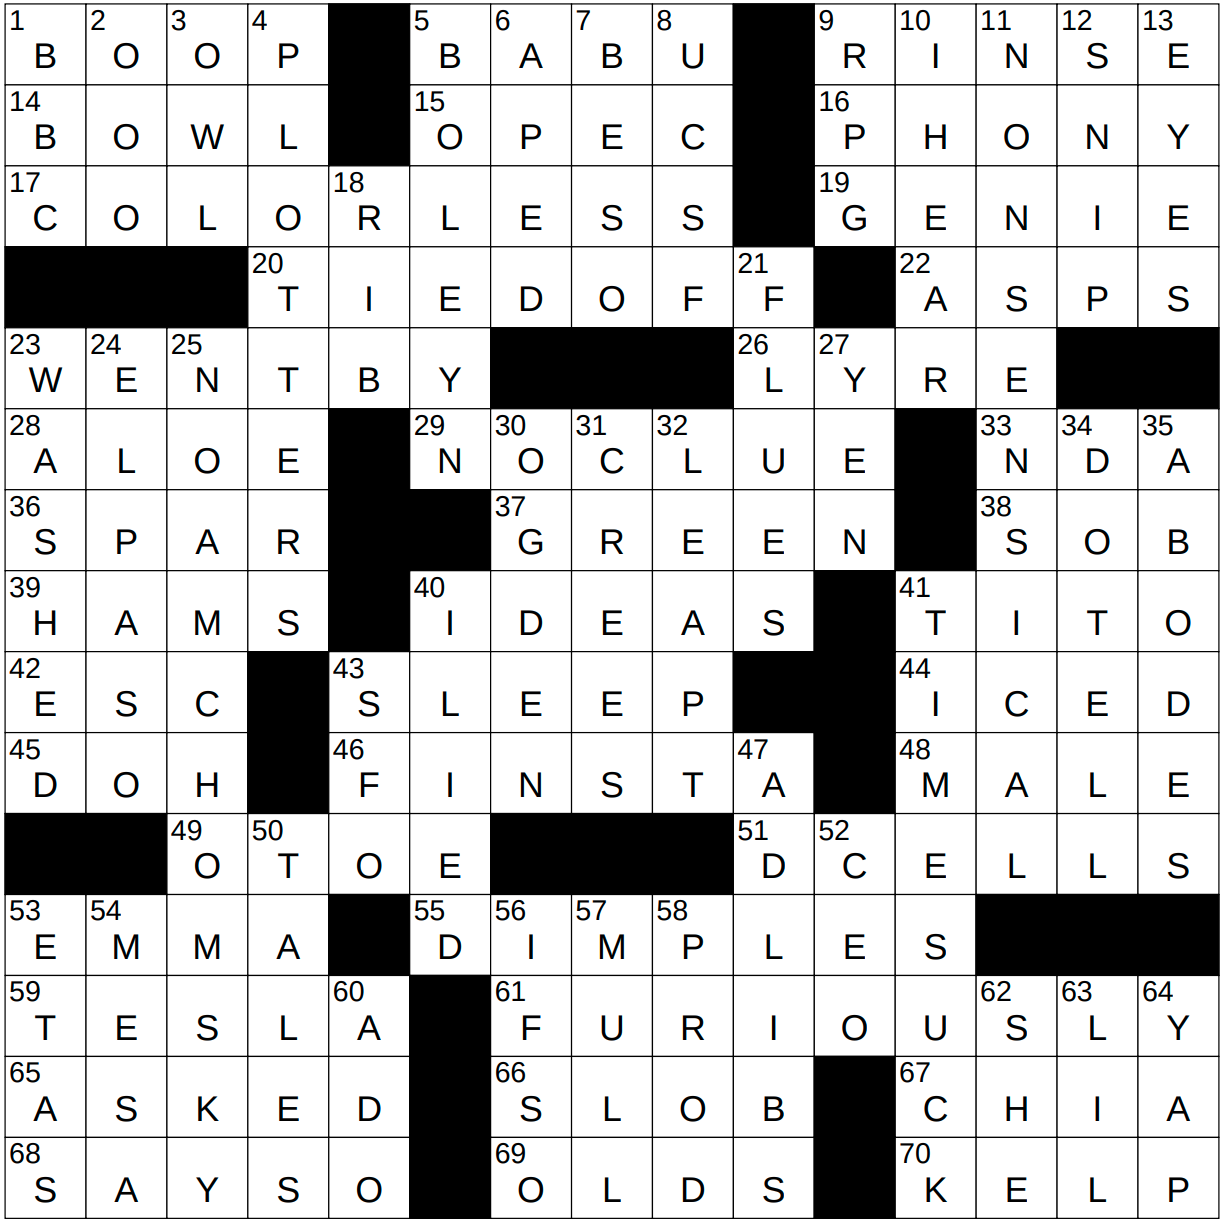 1027-23 NY Times Crossword 27 Oct 23, Friday 